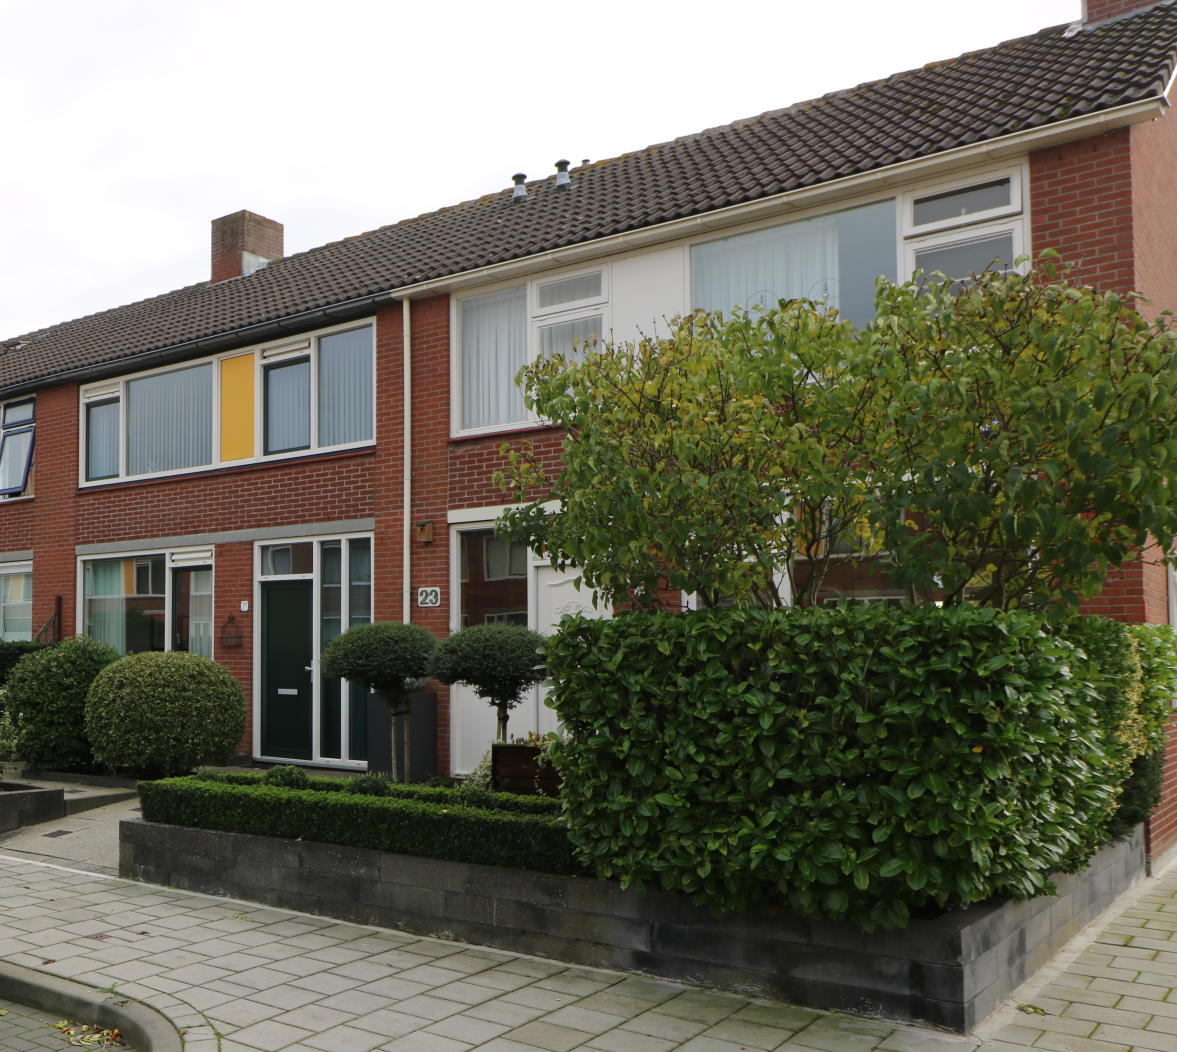 Grevelingenstraat 17, 4388 SB Oost-Souburg, Nederland